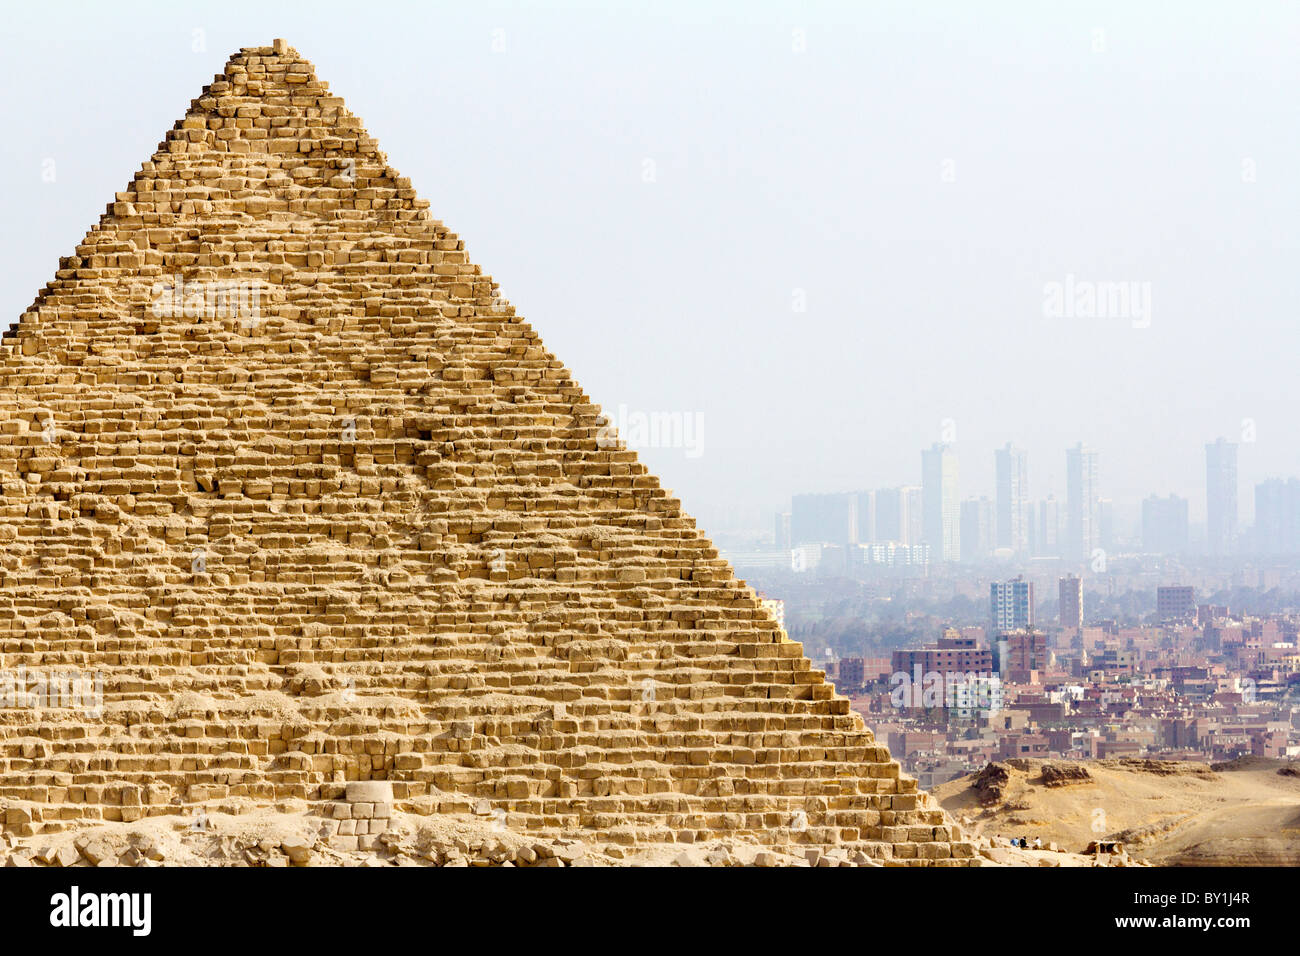 Pyramiden von Gizeh, Ägypten - Mykerinos und Wolkenkratzer von Kairo im verschwommenen Hintergrund 2 Stockfoto